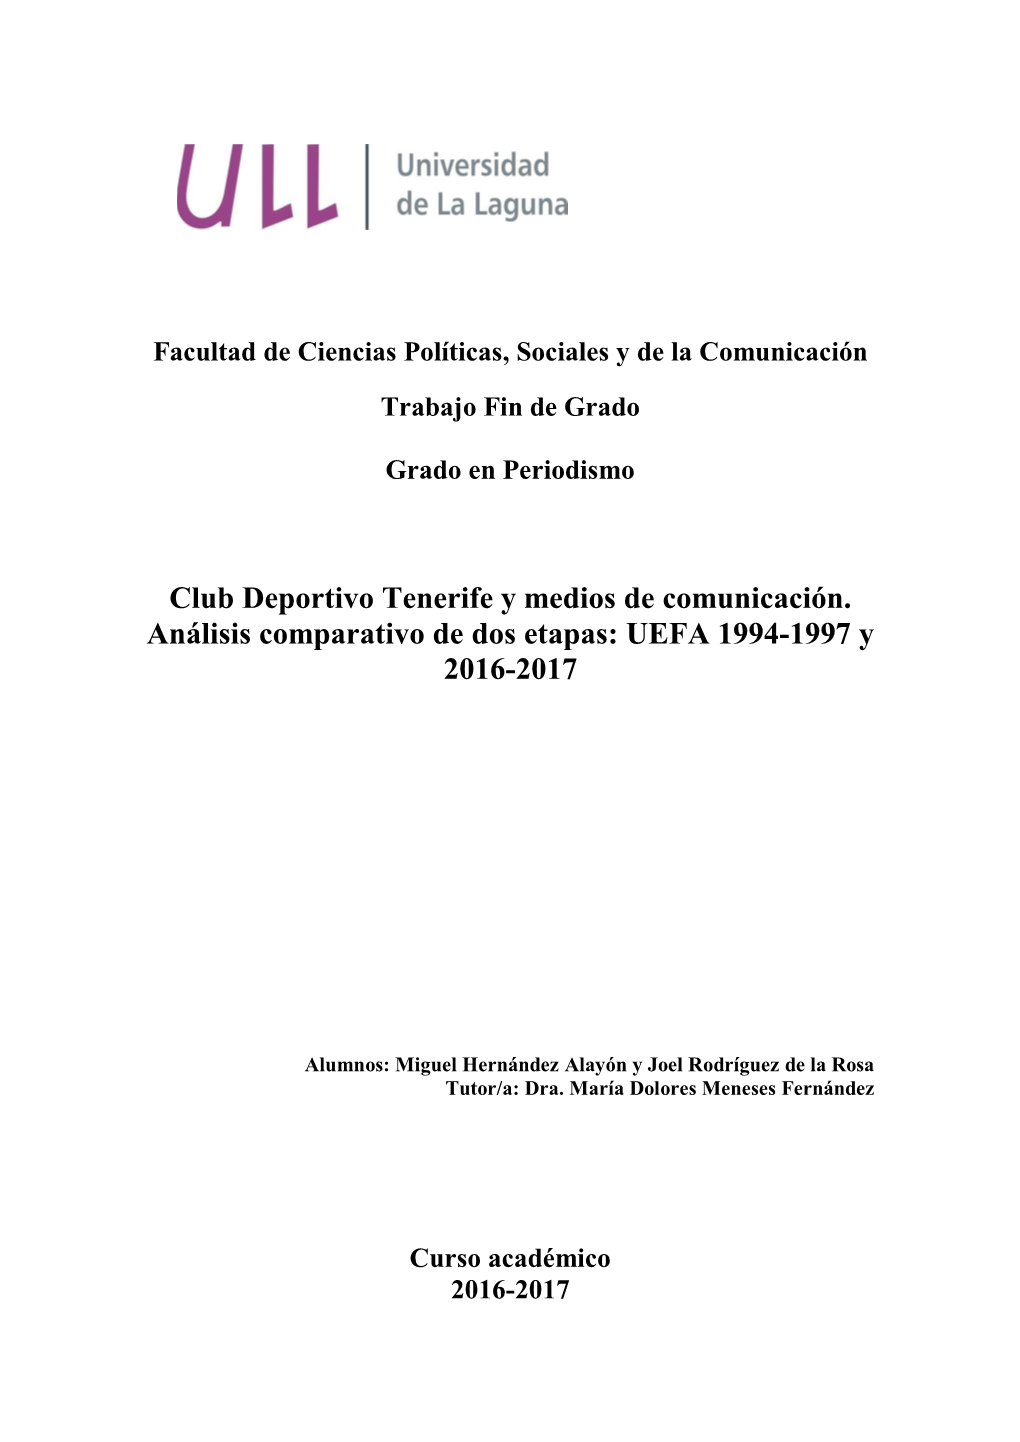 Club Deportivo Tenerife Y Medios De Comunicación. Análisis Comparativo De Dos Etapas: UEFA 1994-1997 Y 2016-2017